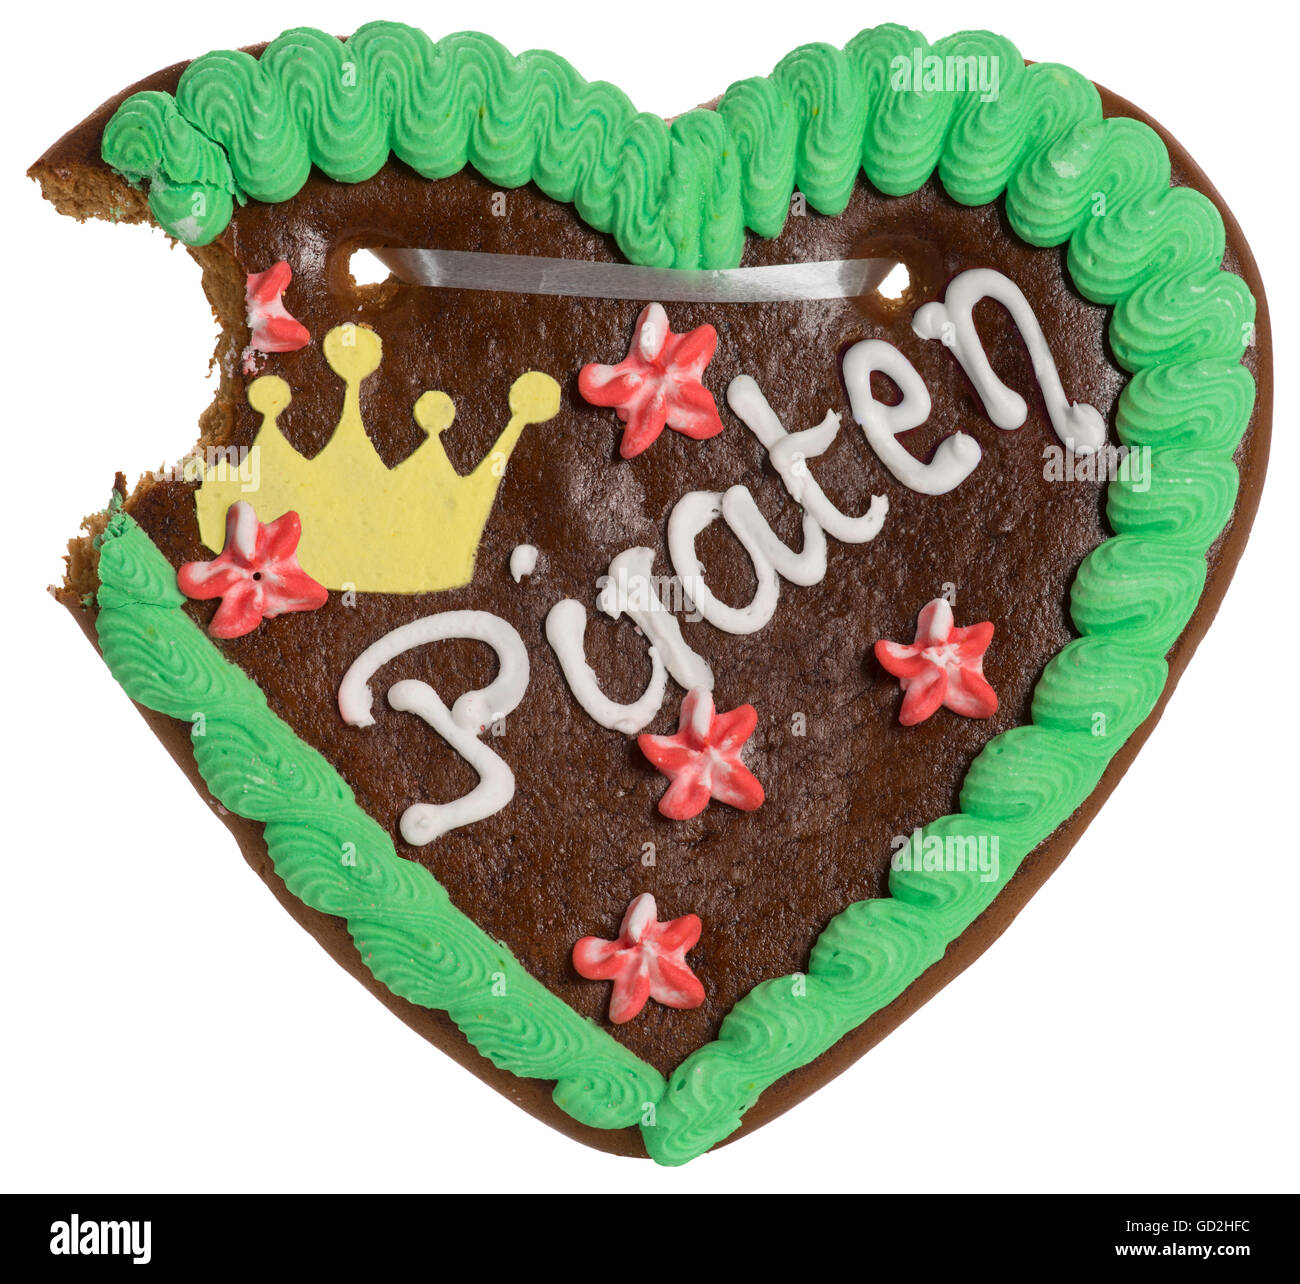 Lebensmittel, Lebkuchen, mit der Aufschrift 'Piraten', Deutschland, 2012, Zusatzrechte-Clearences-nicht vorhanden Stockfoto